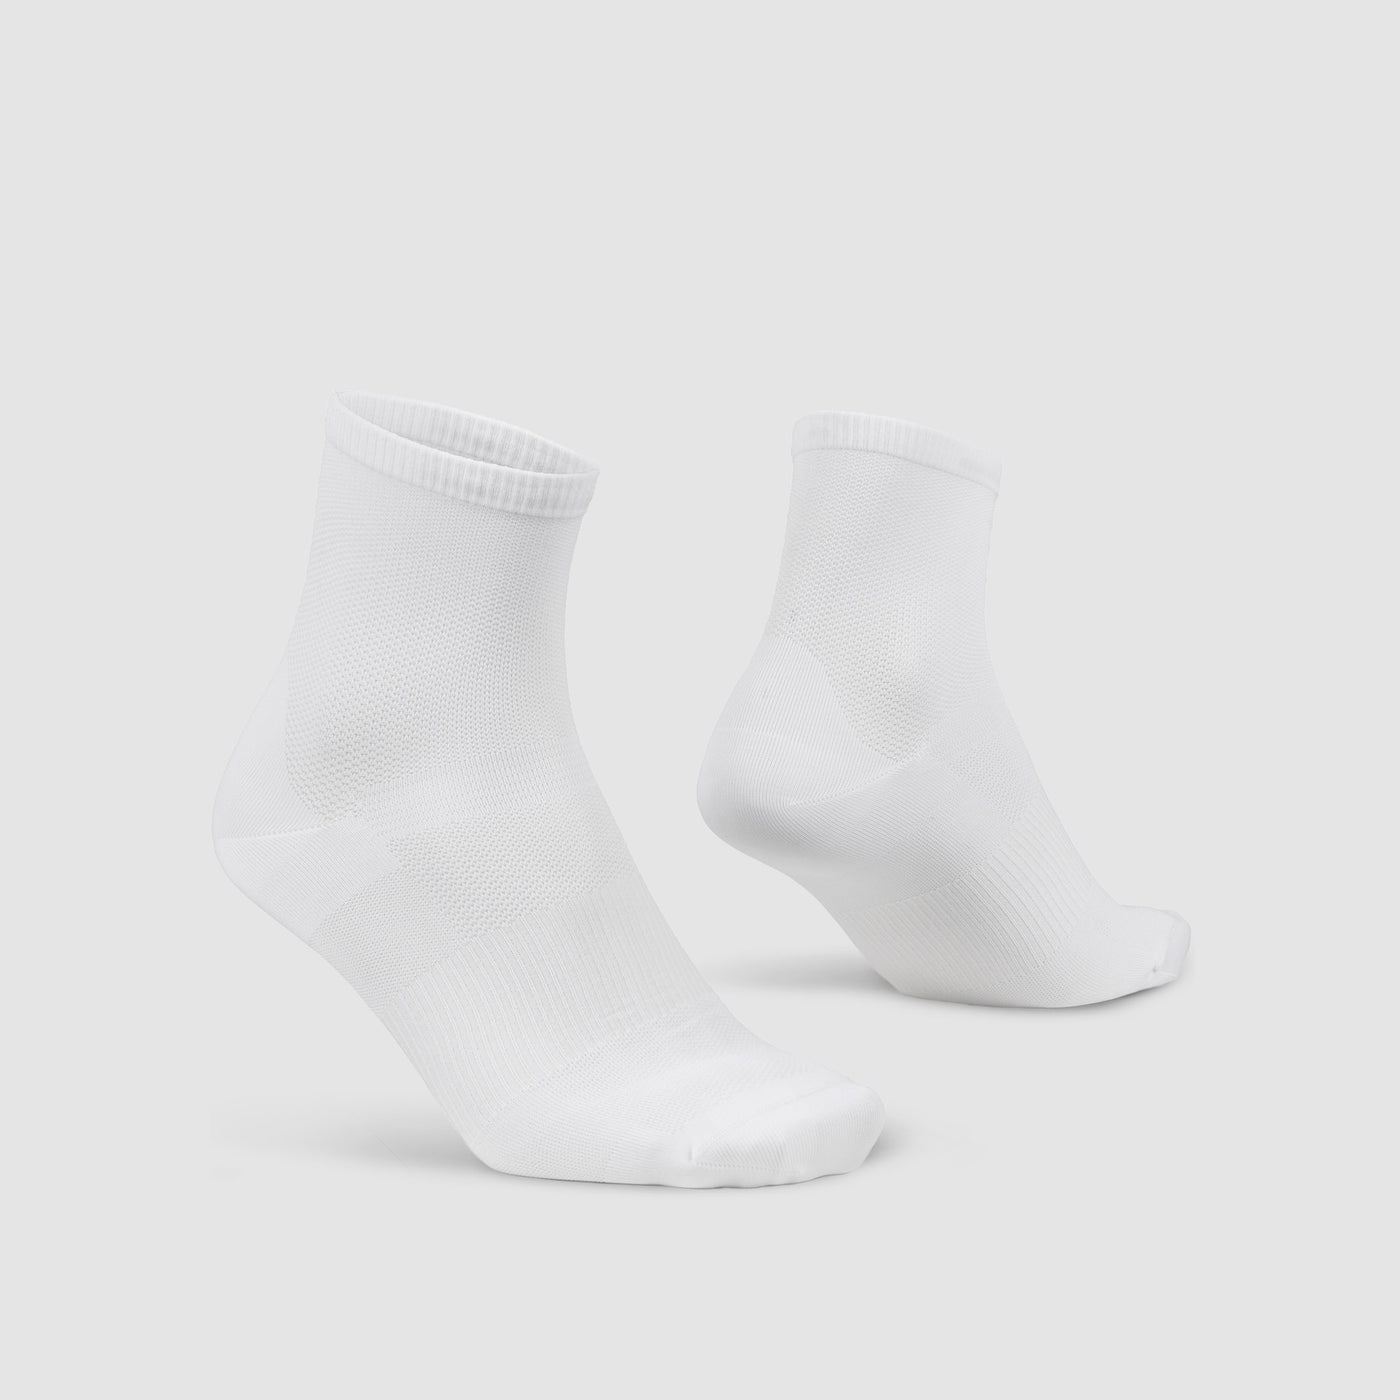 Airflow Lightweight Short Summer Socks